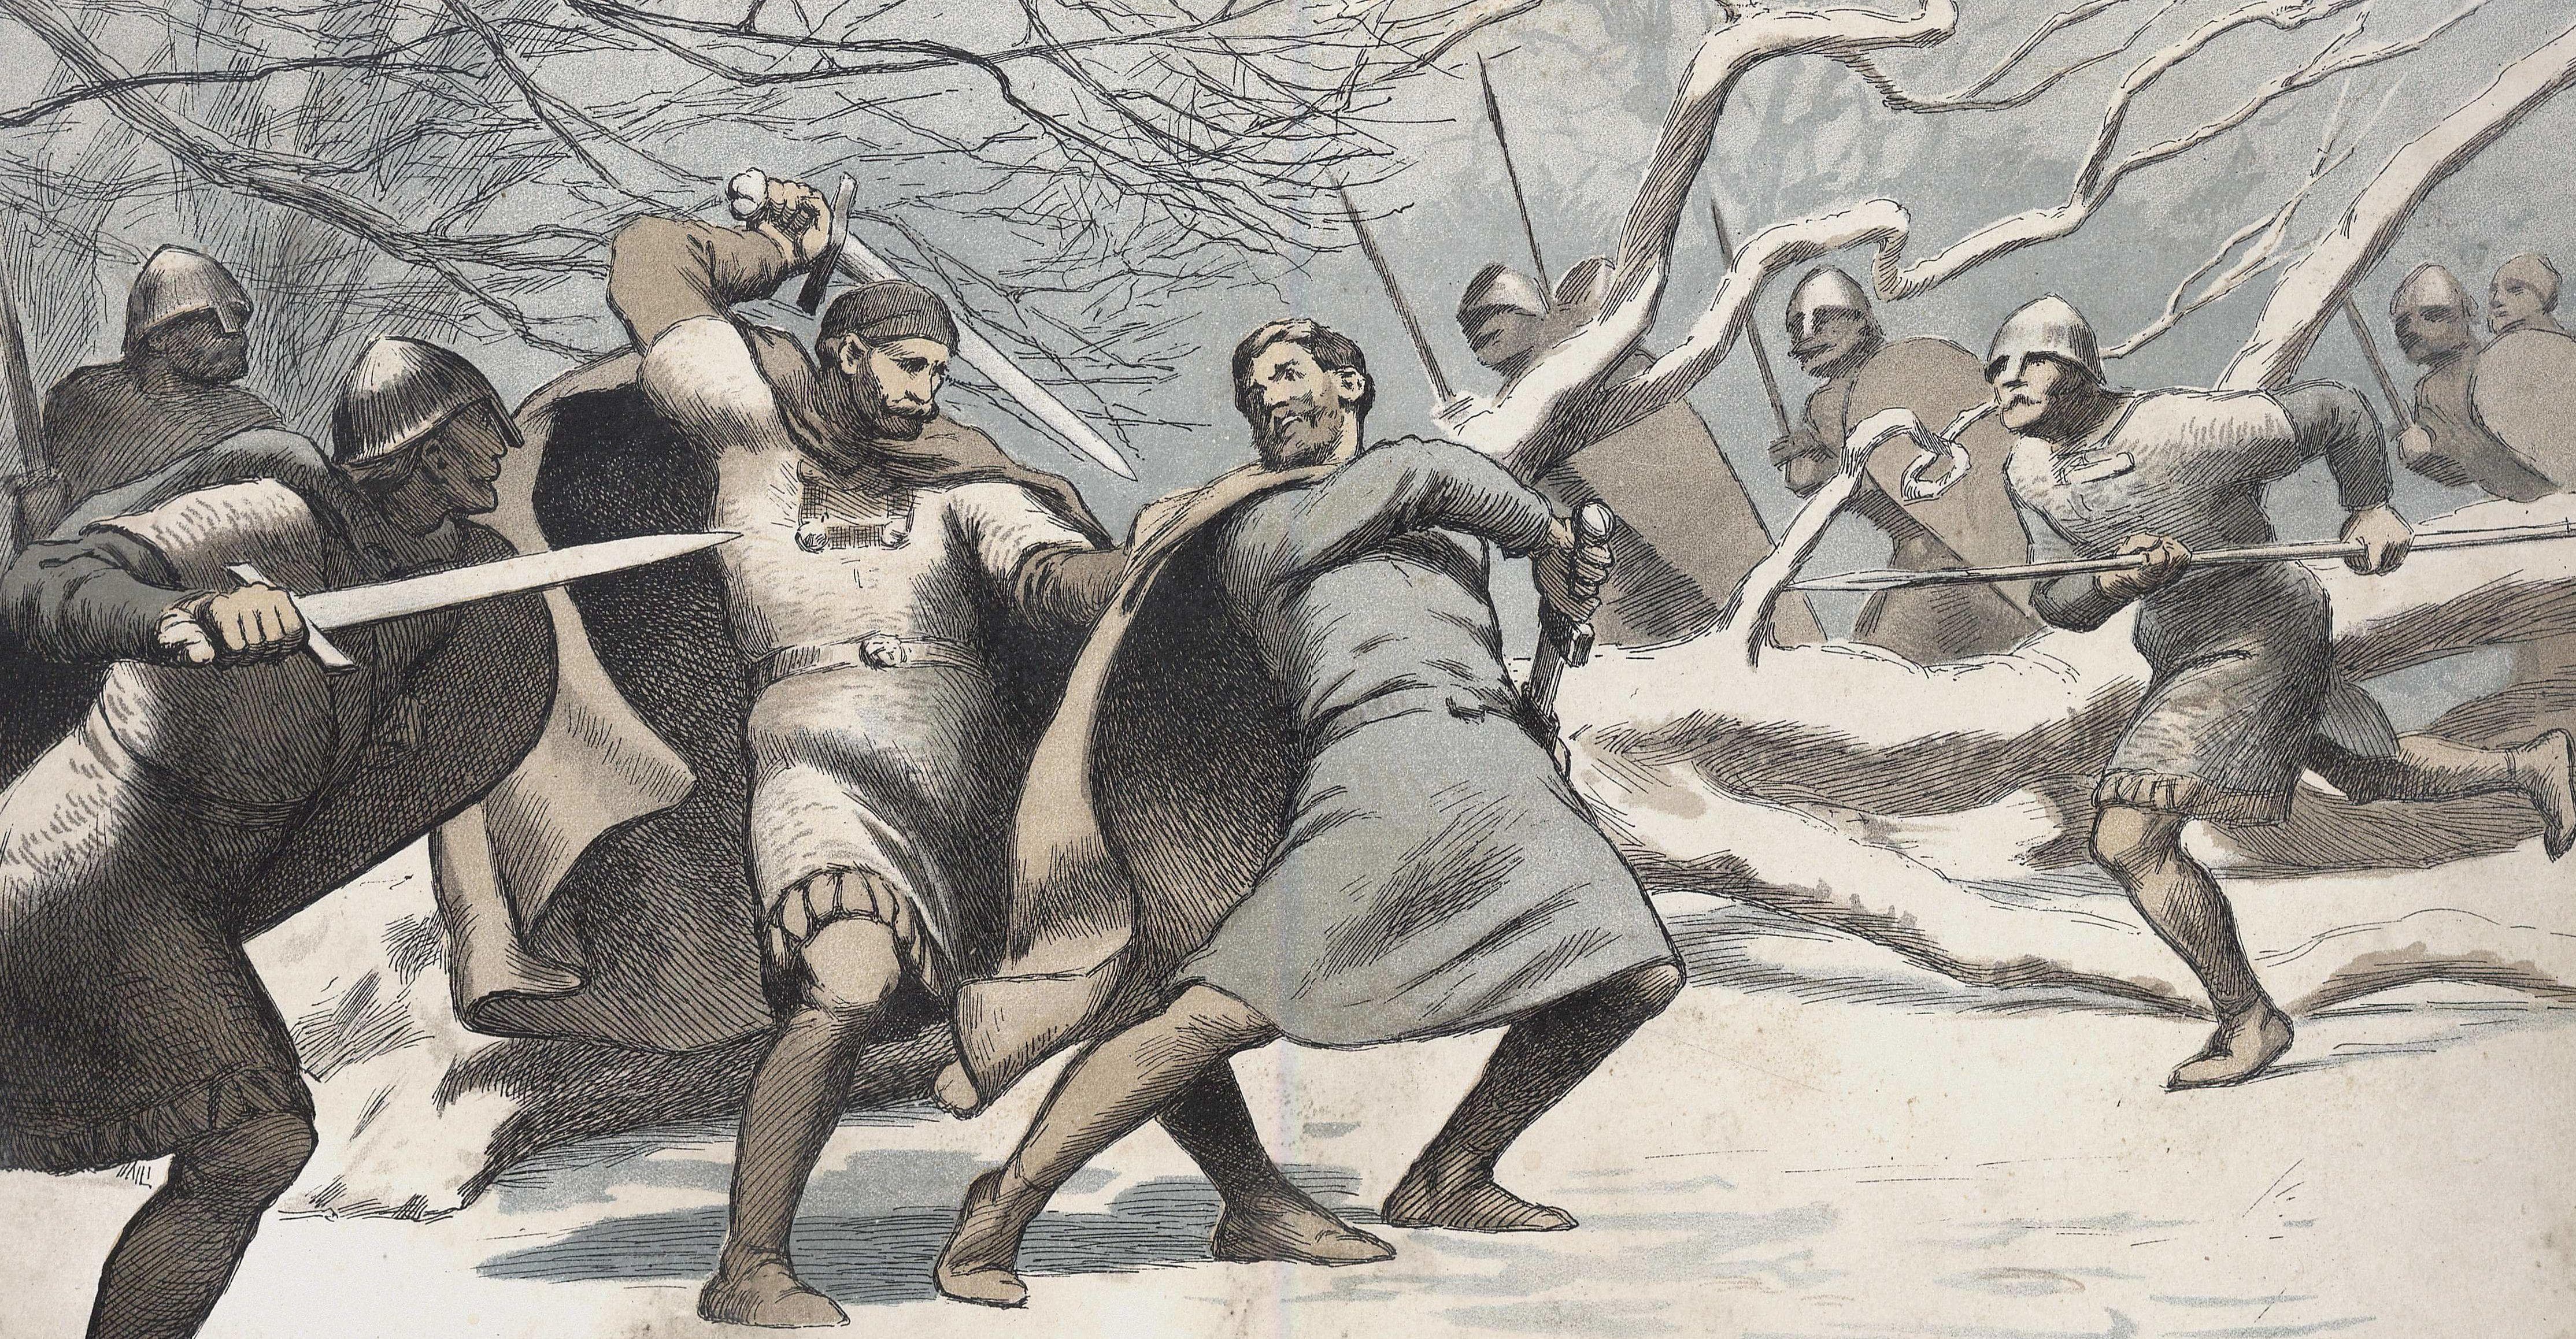 Vikings: Valhalla': figuras históricas